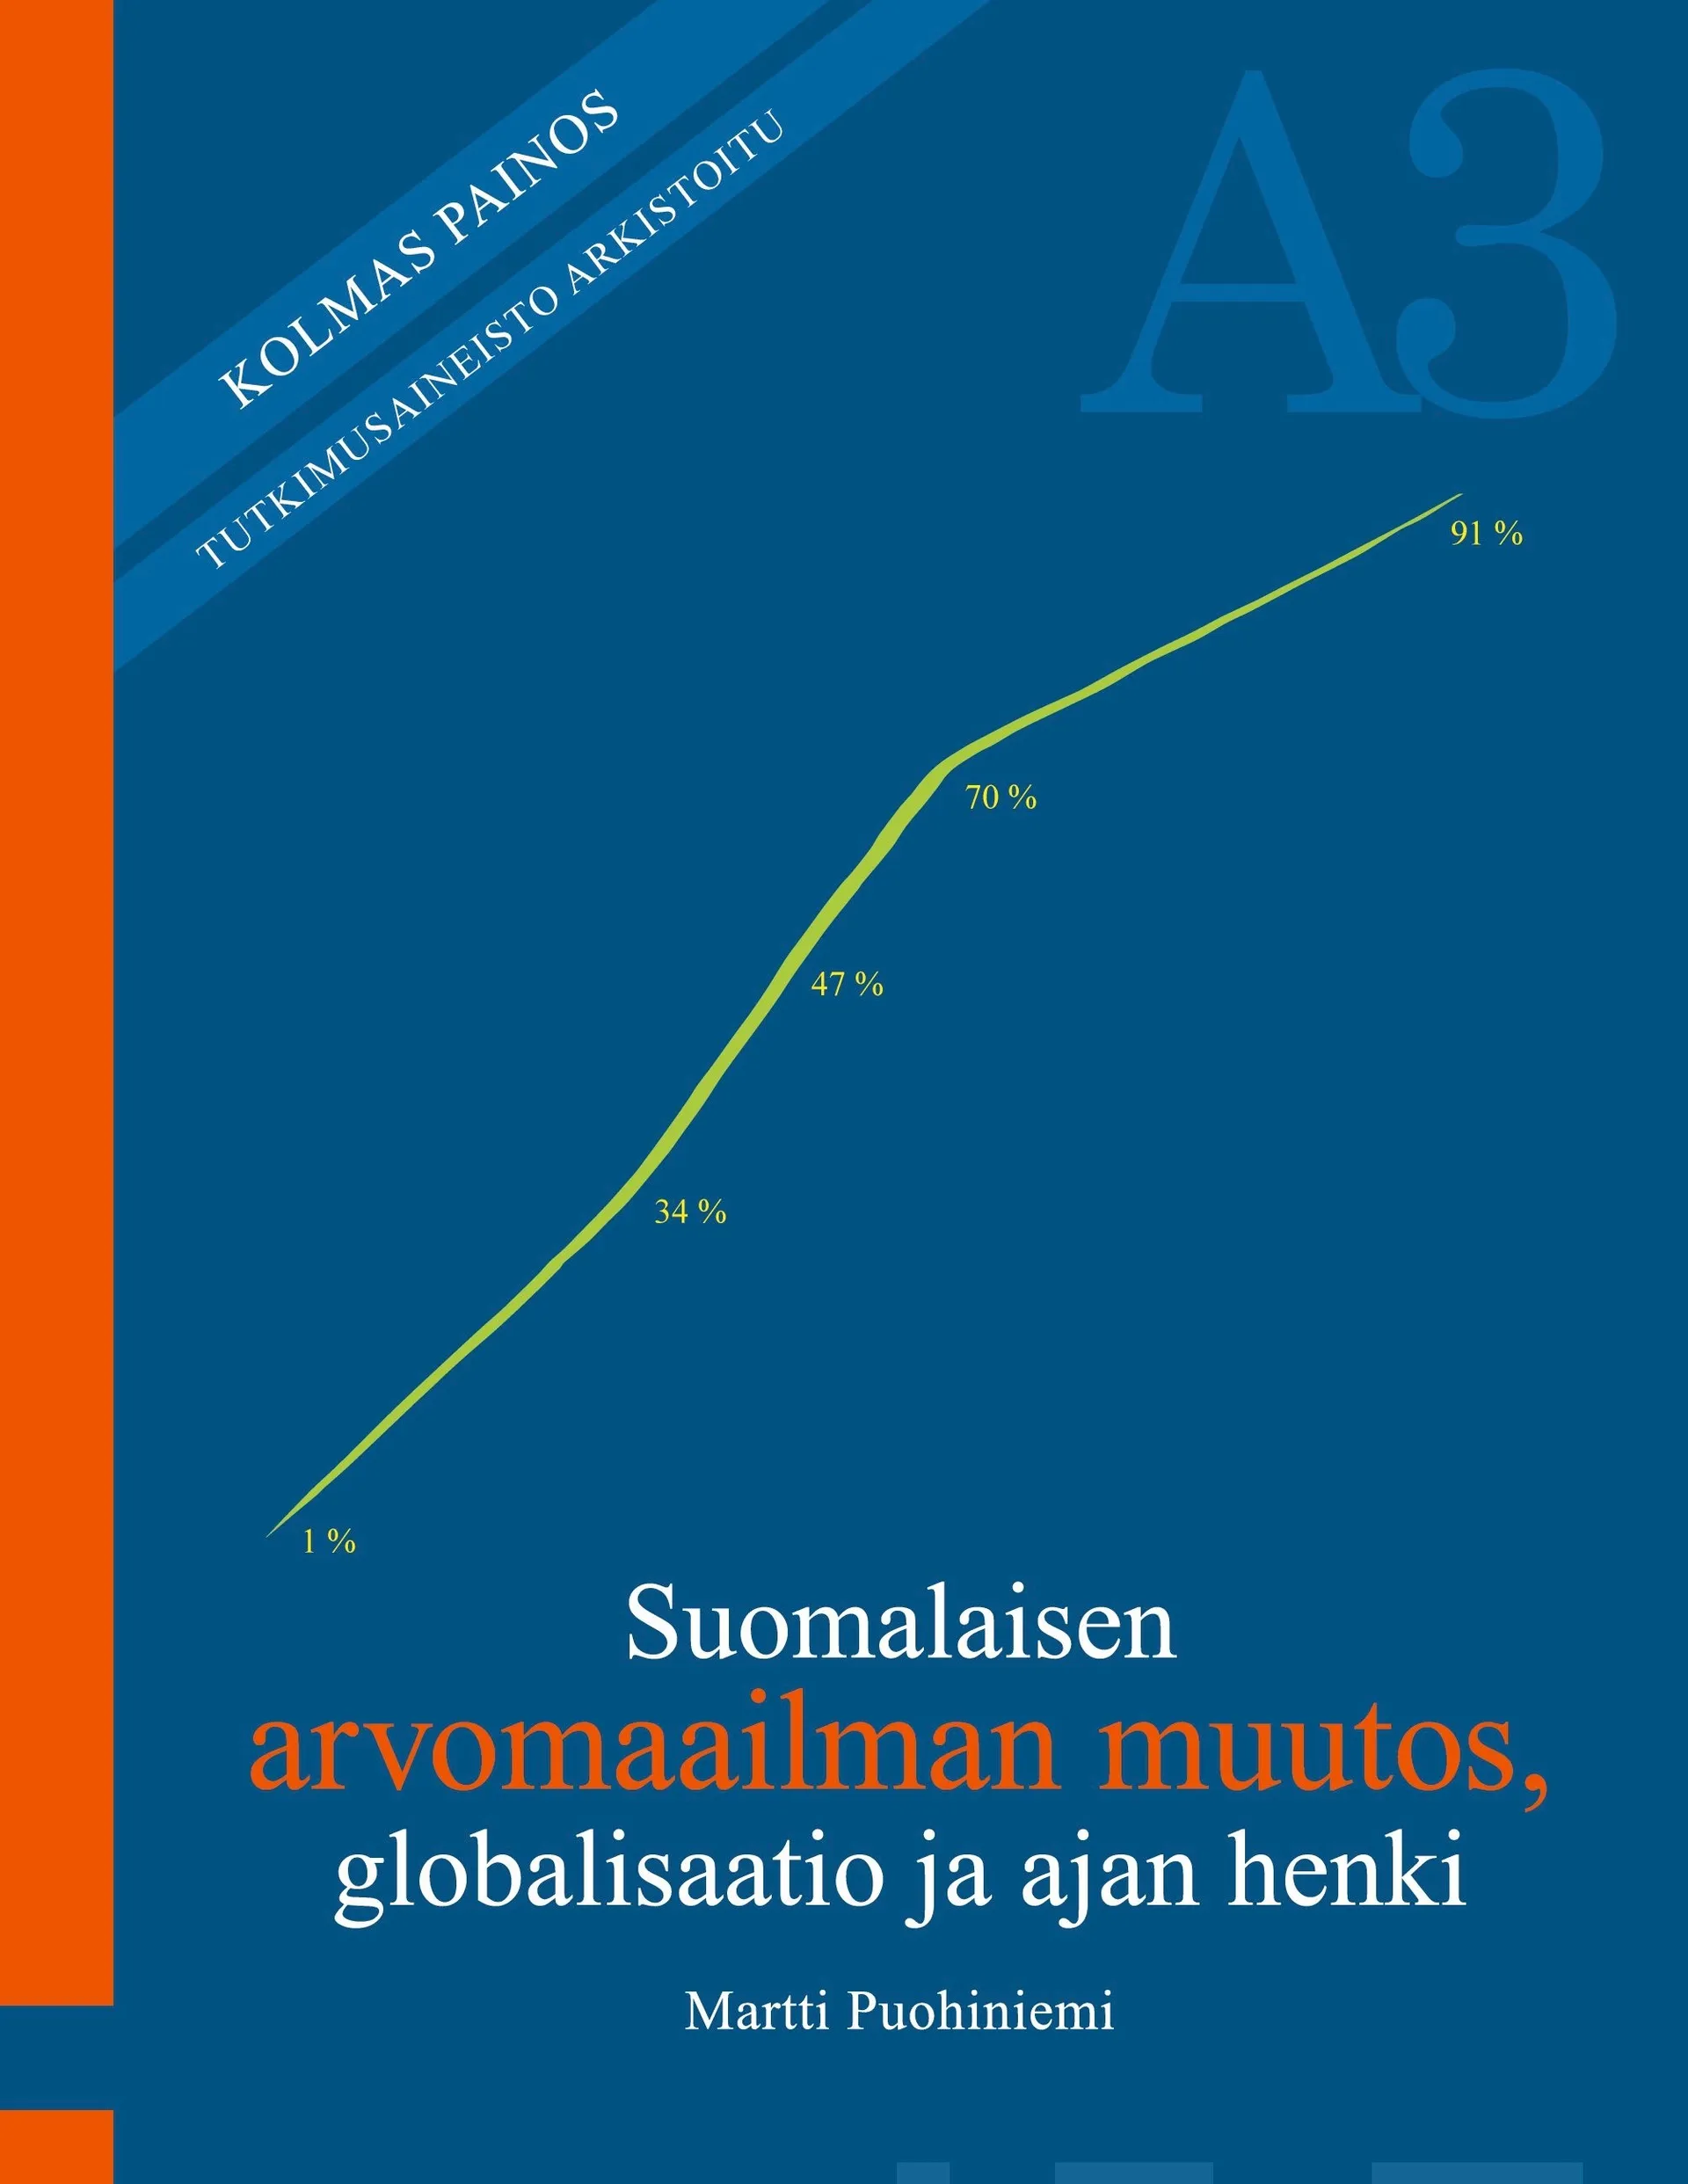 Puohiniemi, Suomalaisen arvomaailman muutos, globalisaatio ja ajan henki